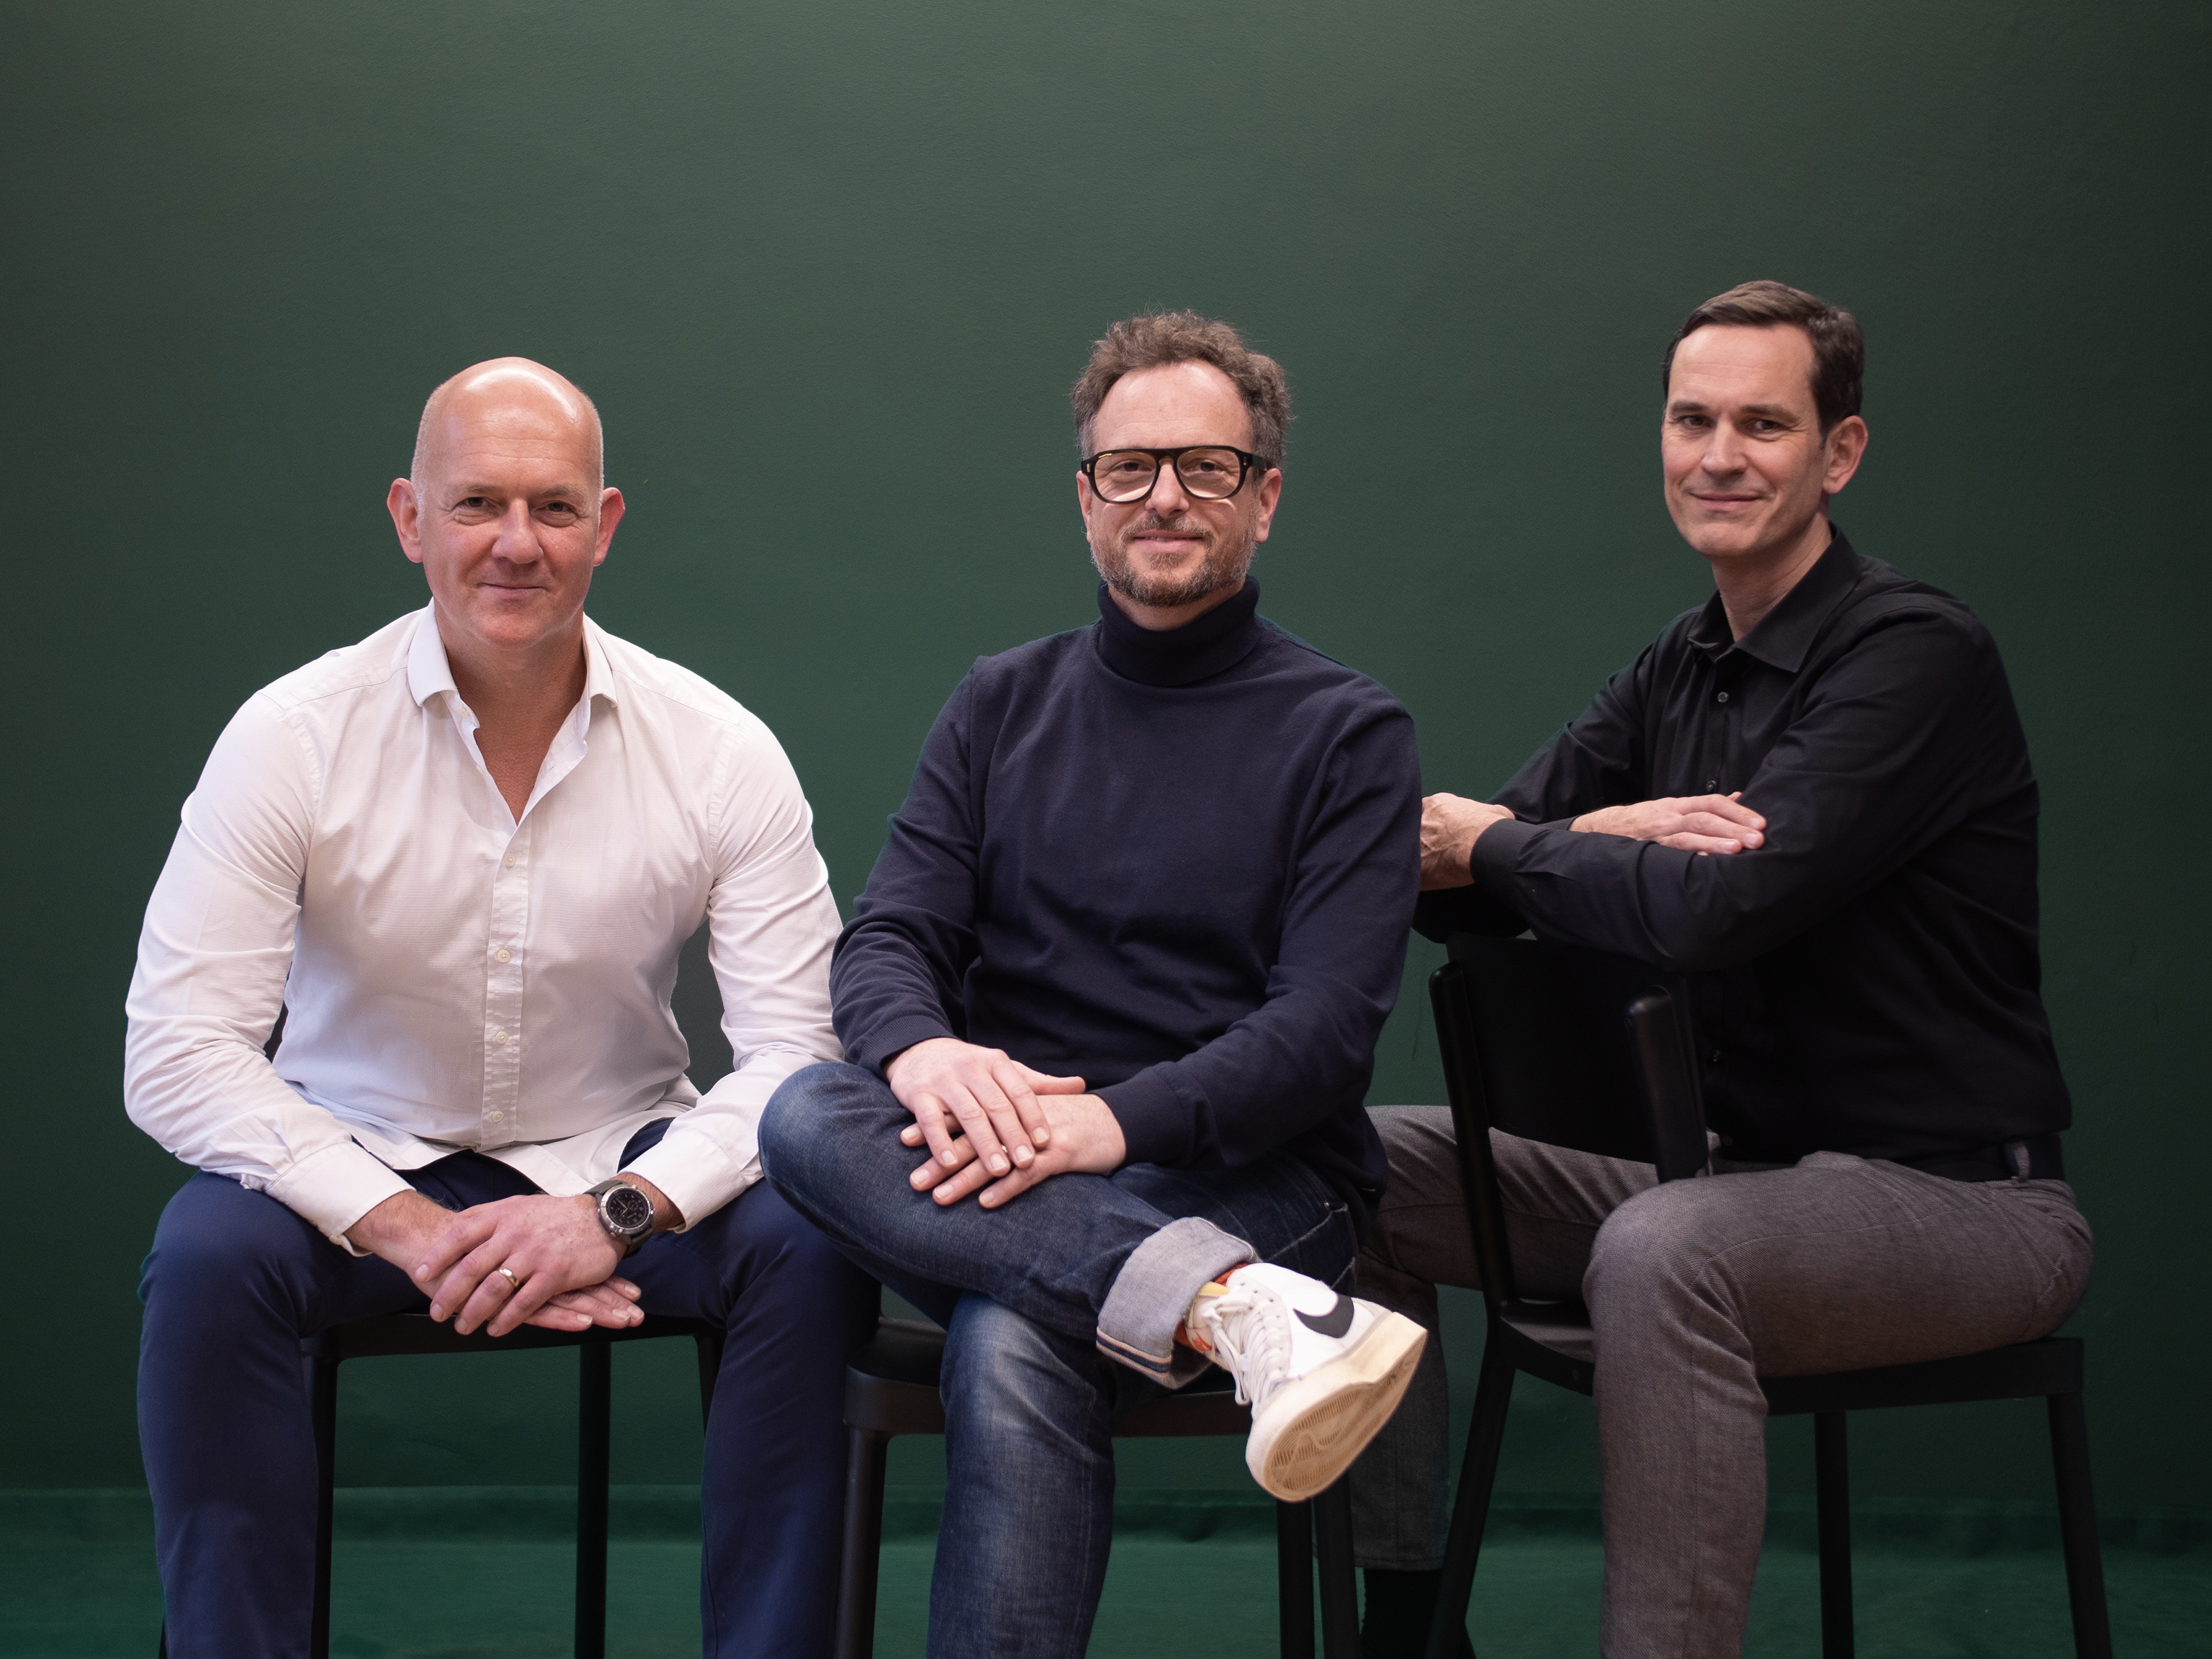 Picture of the three managing directors of Jung von Matt Netzeffekt Wolfgang Vogt, Bernd Stieber and Werner Kubitscheck.